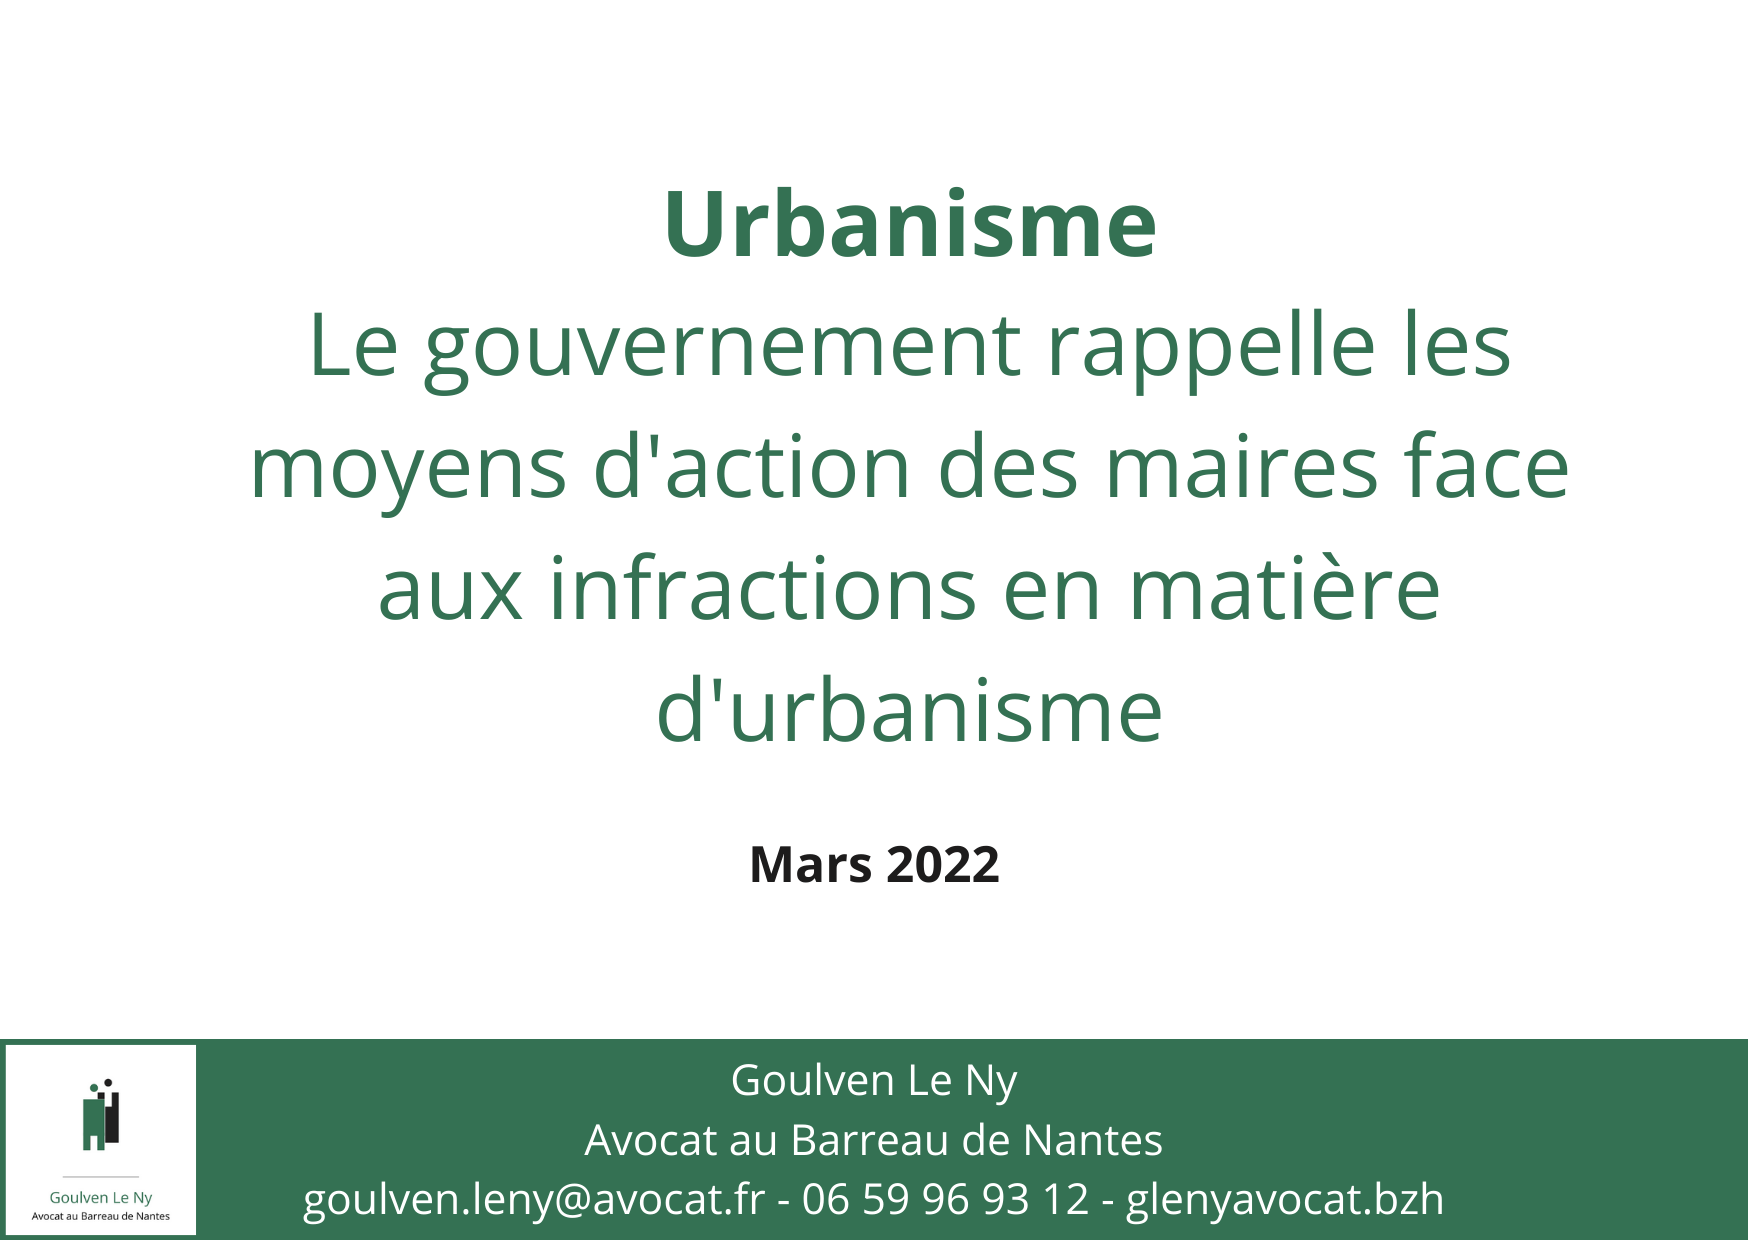 Le gouvernement rappelle les moyens d'action des maires face aux infractions en matière d'urbanisme, suite à une ordonnance du juge des référés du Tribunal Administratif de Strasbourg